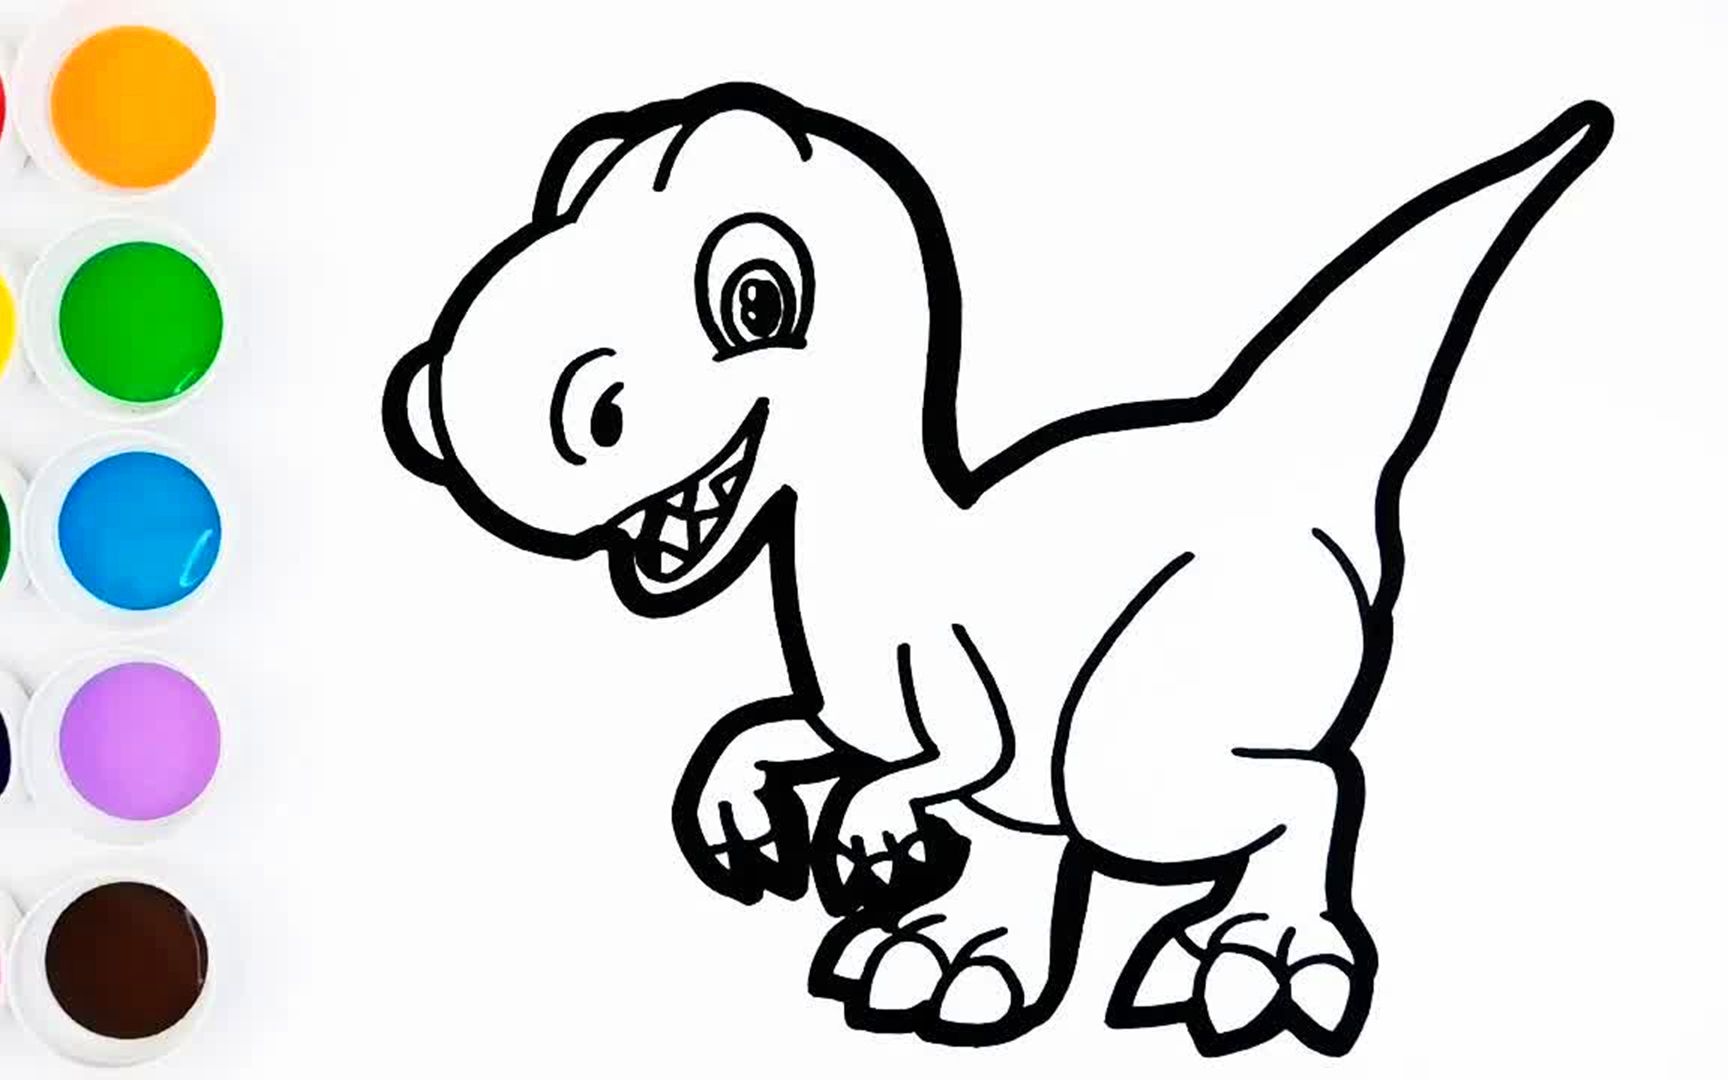 儿童益智玩具:手工diy绘画涂鸦,绘画一只五颜六色的大恐龙!